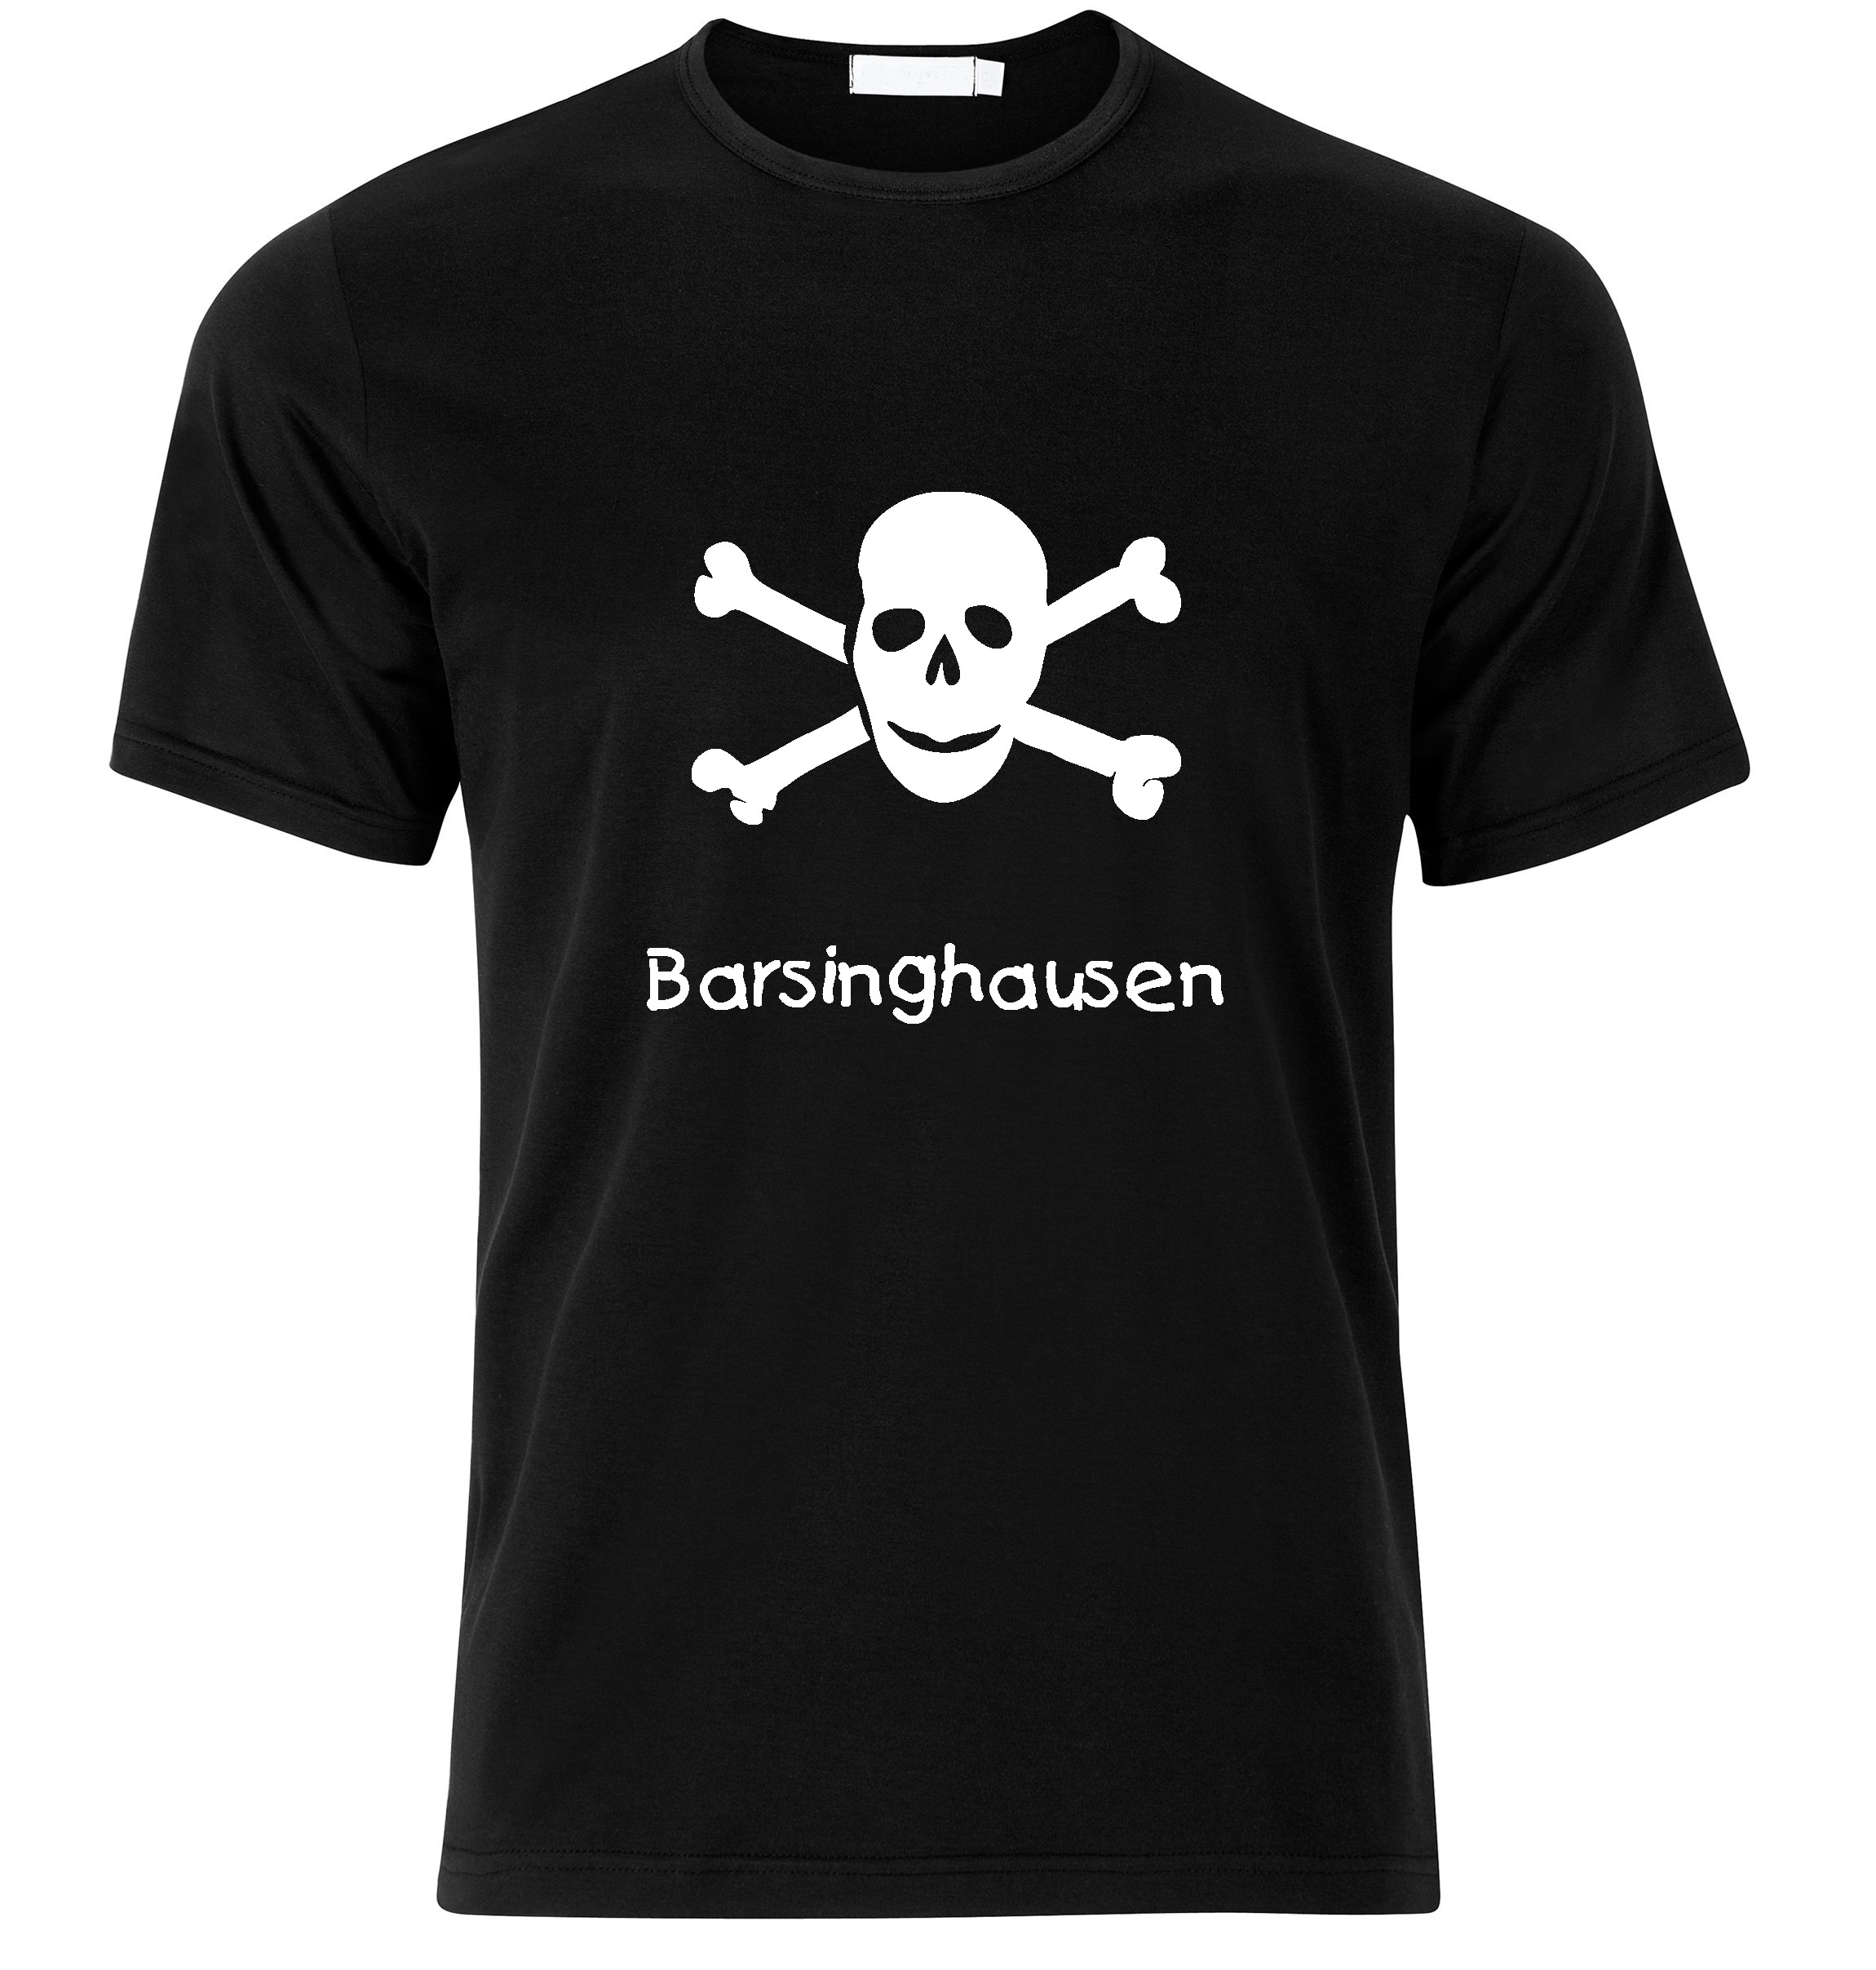 T-Shirt Barsinghausen Jolly Roger, Totenkopf